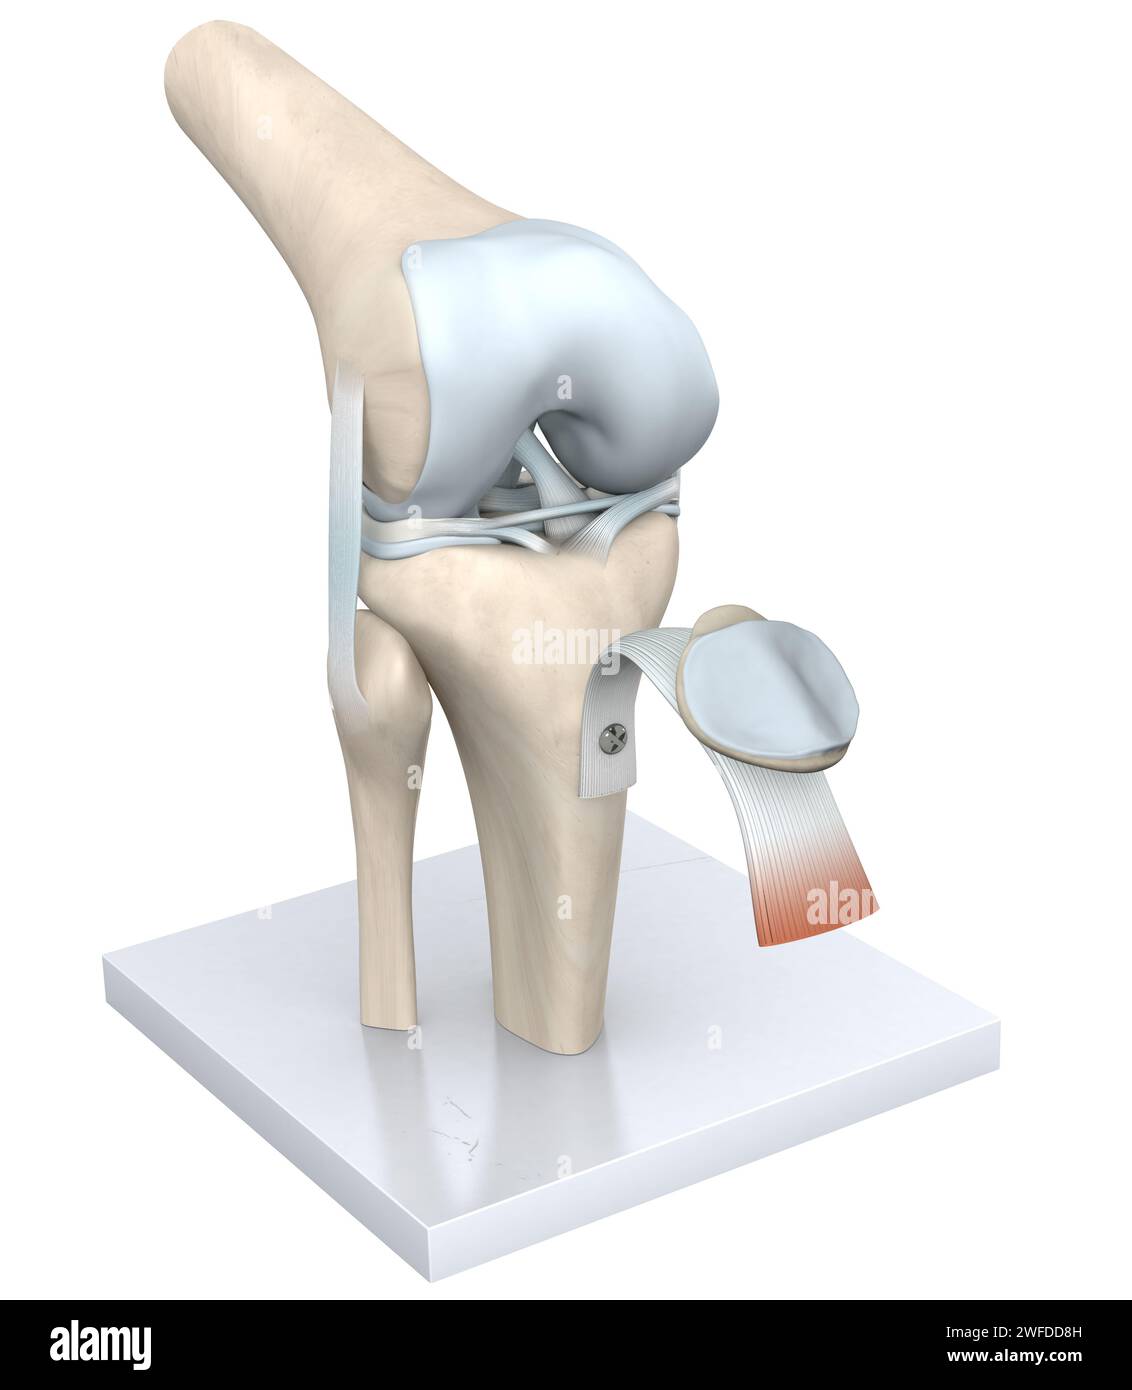 Das Kniegelenk, eine komplexe Scharnierstruktur, verbindet den Oberschenkelknochen (Femur) mit dem Schienbeinknochen (Tibia), das durch Knorpel gepolstert wird, wodurch Beugung und Dehnung ermöglicht werden Stockfoto